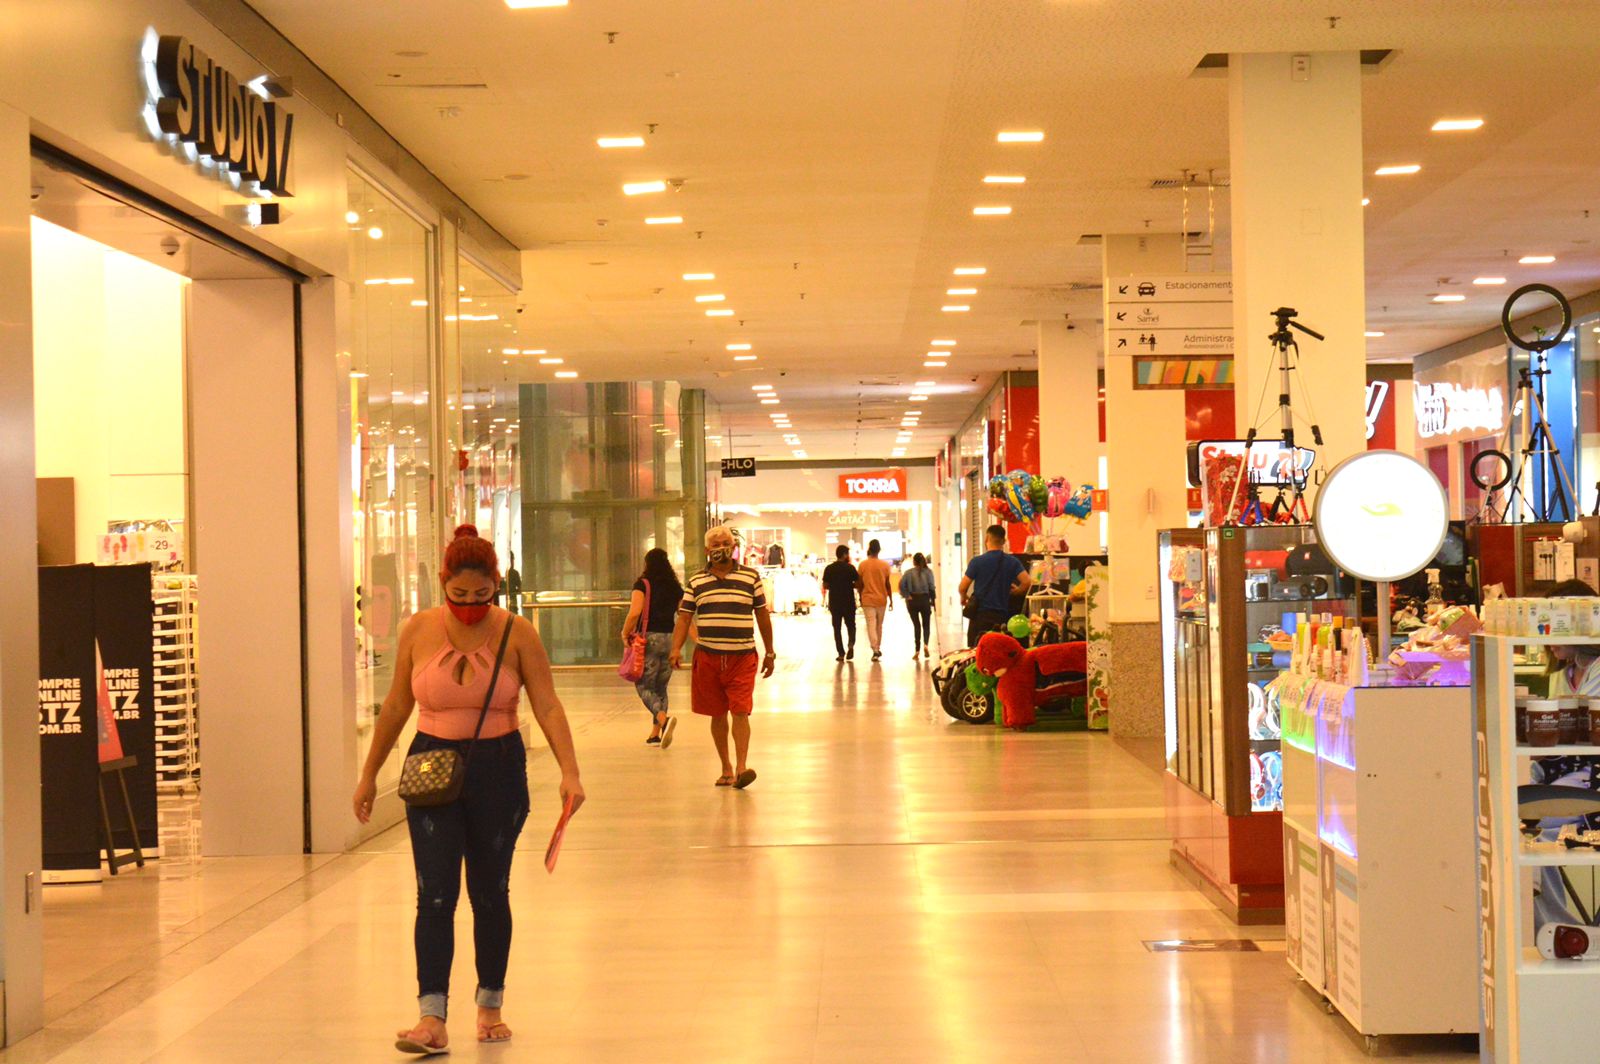 Centro de compras na Zona Norte é referência em serviços gratuitos para população